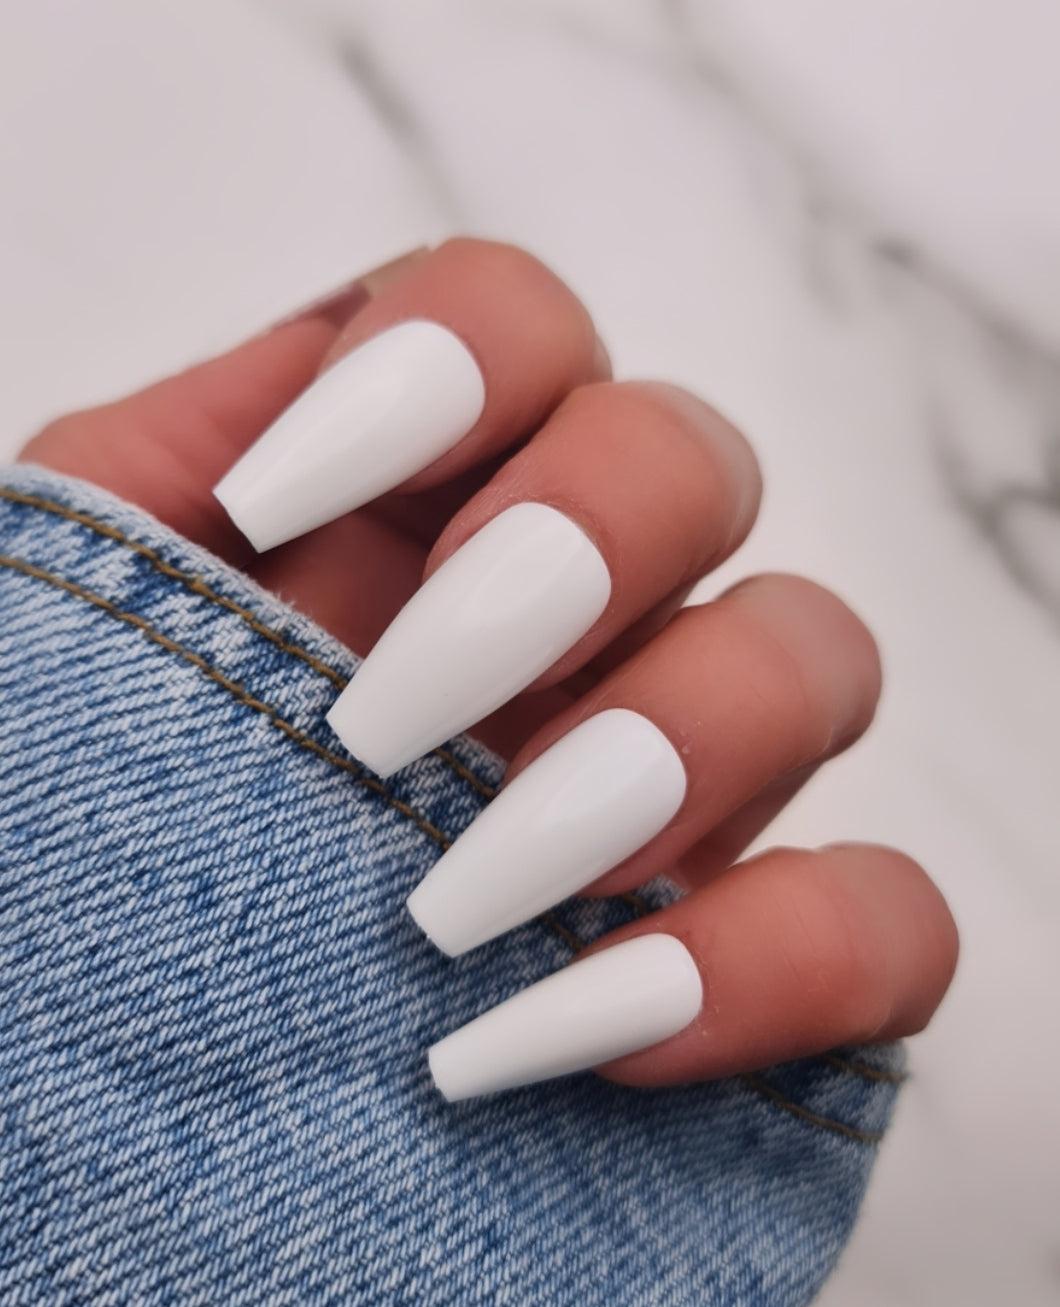 White Nails 2 Press on nails